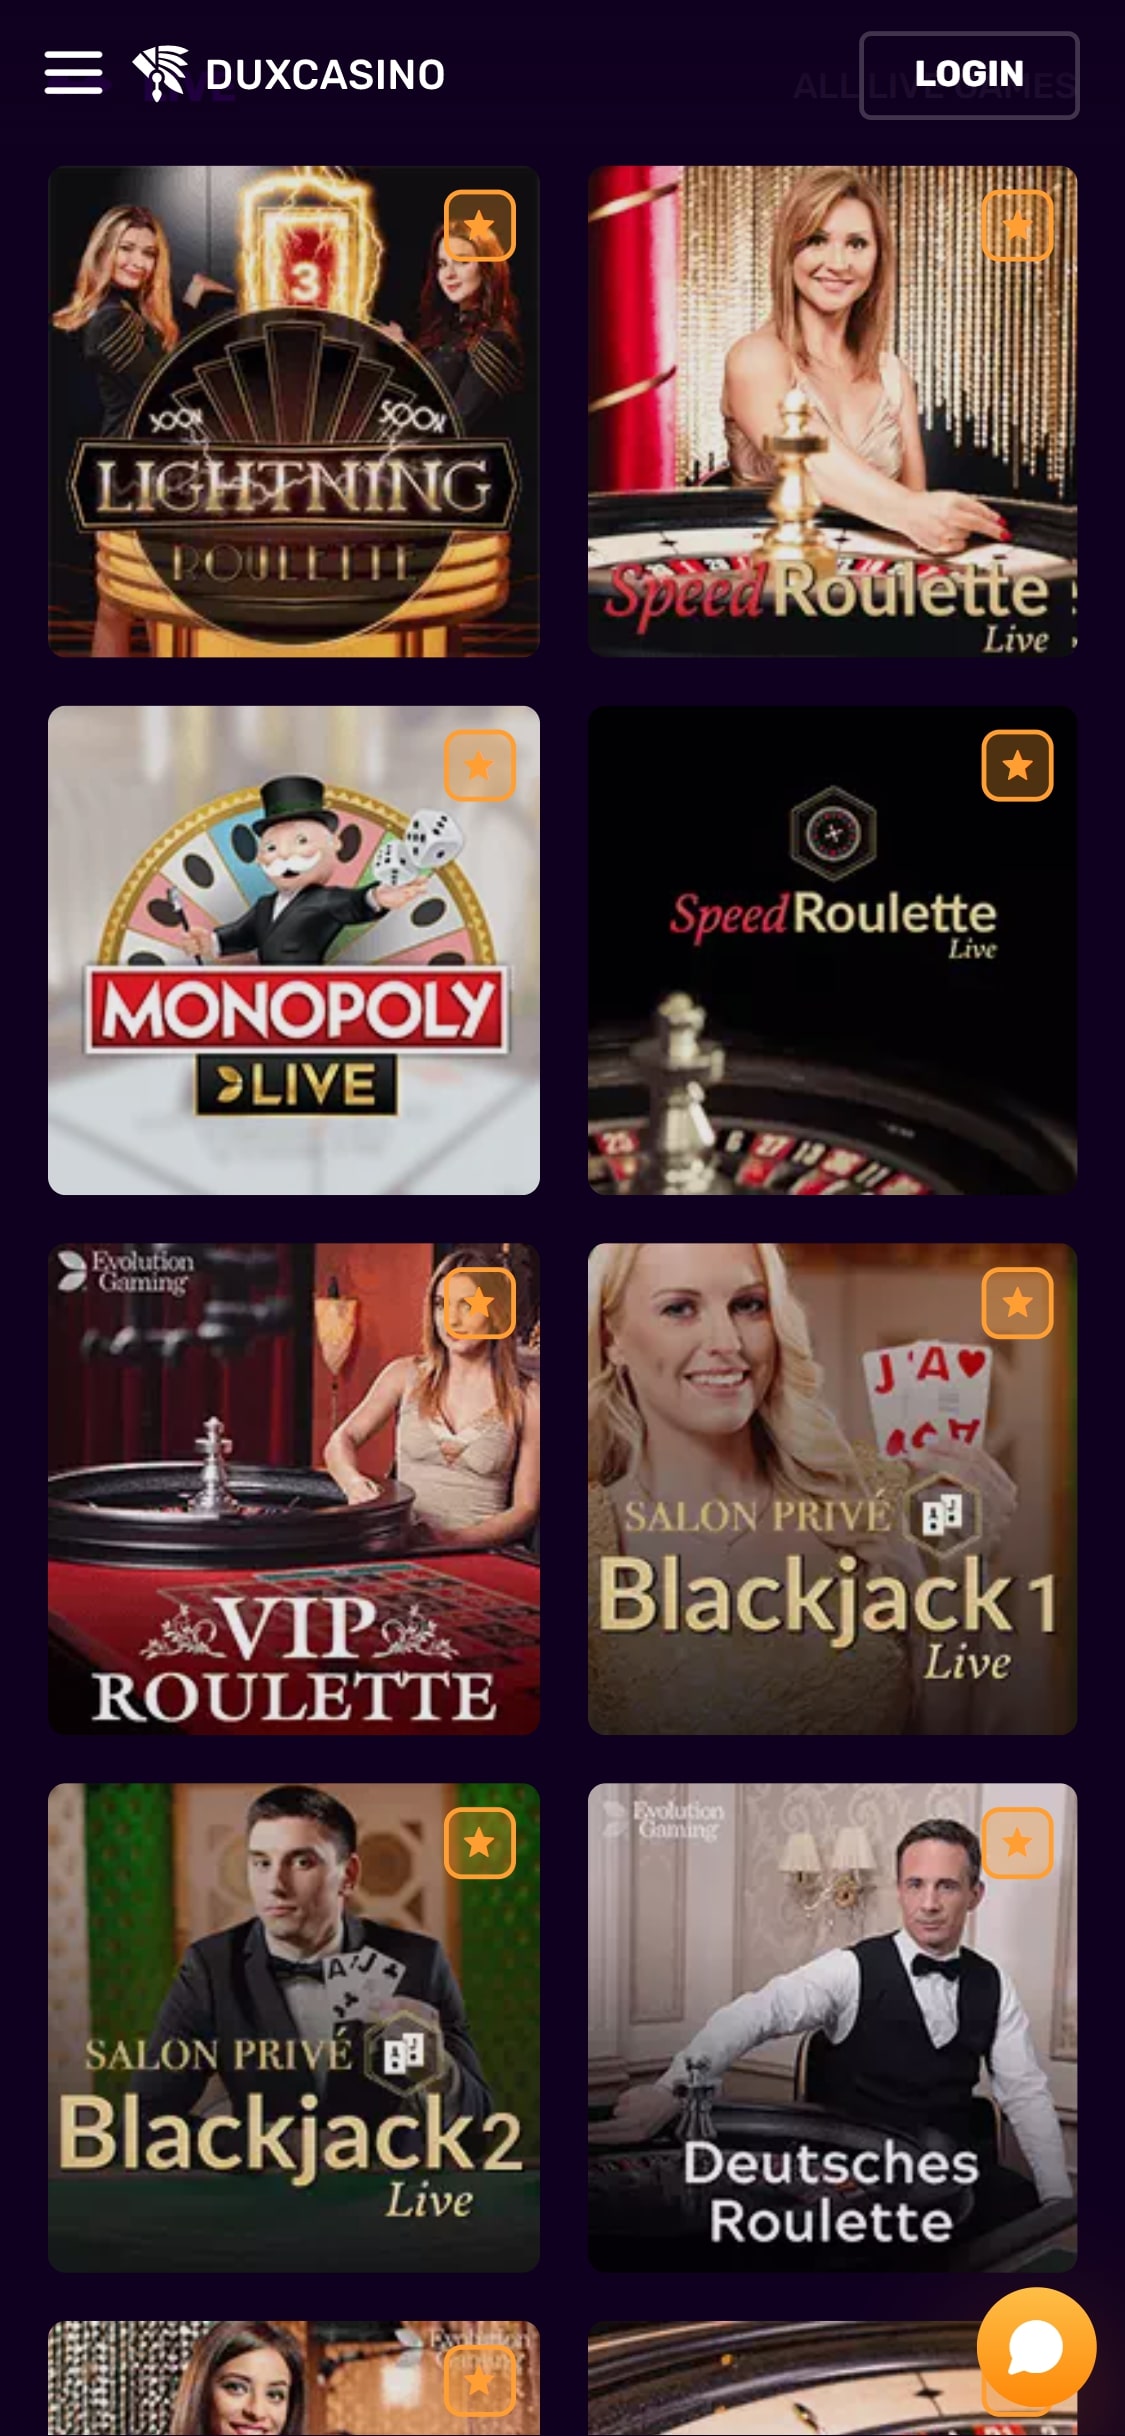 Dux Casino Mobile Live Dealer Games Review